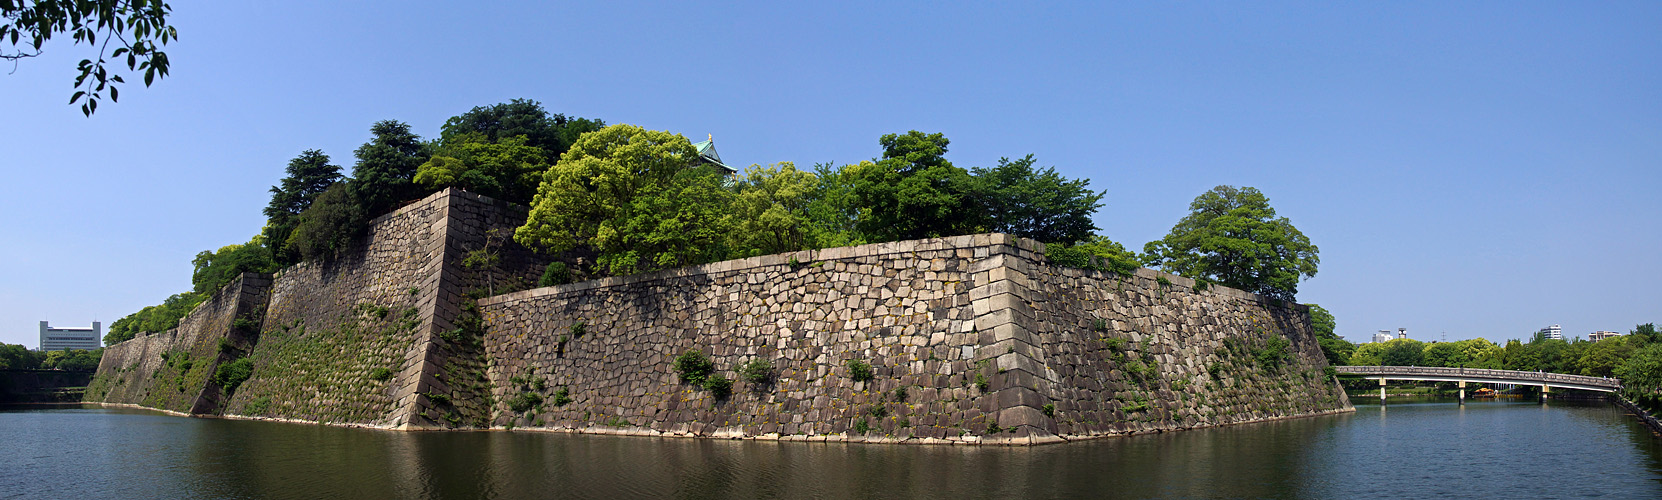 Photo panoramique du château dŌsaka